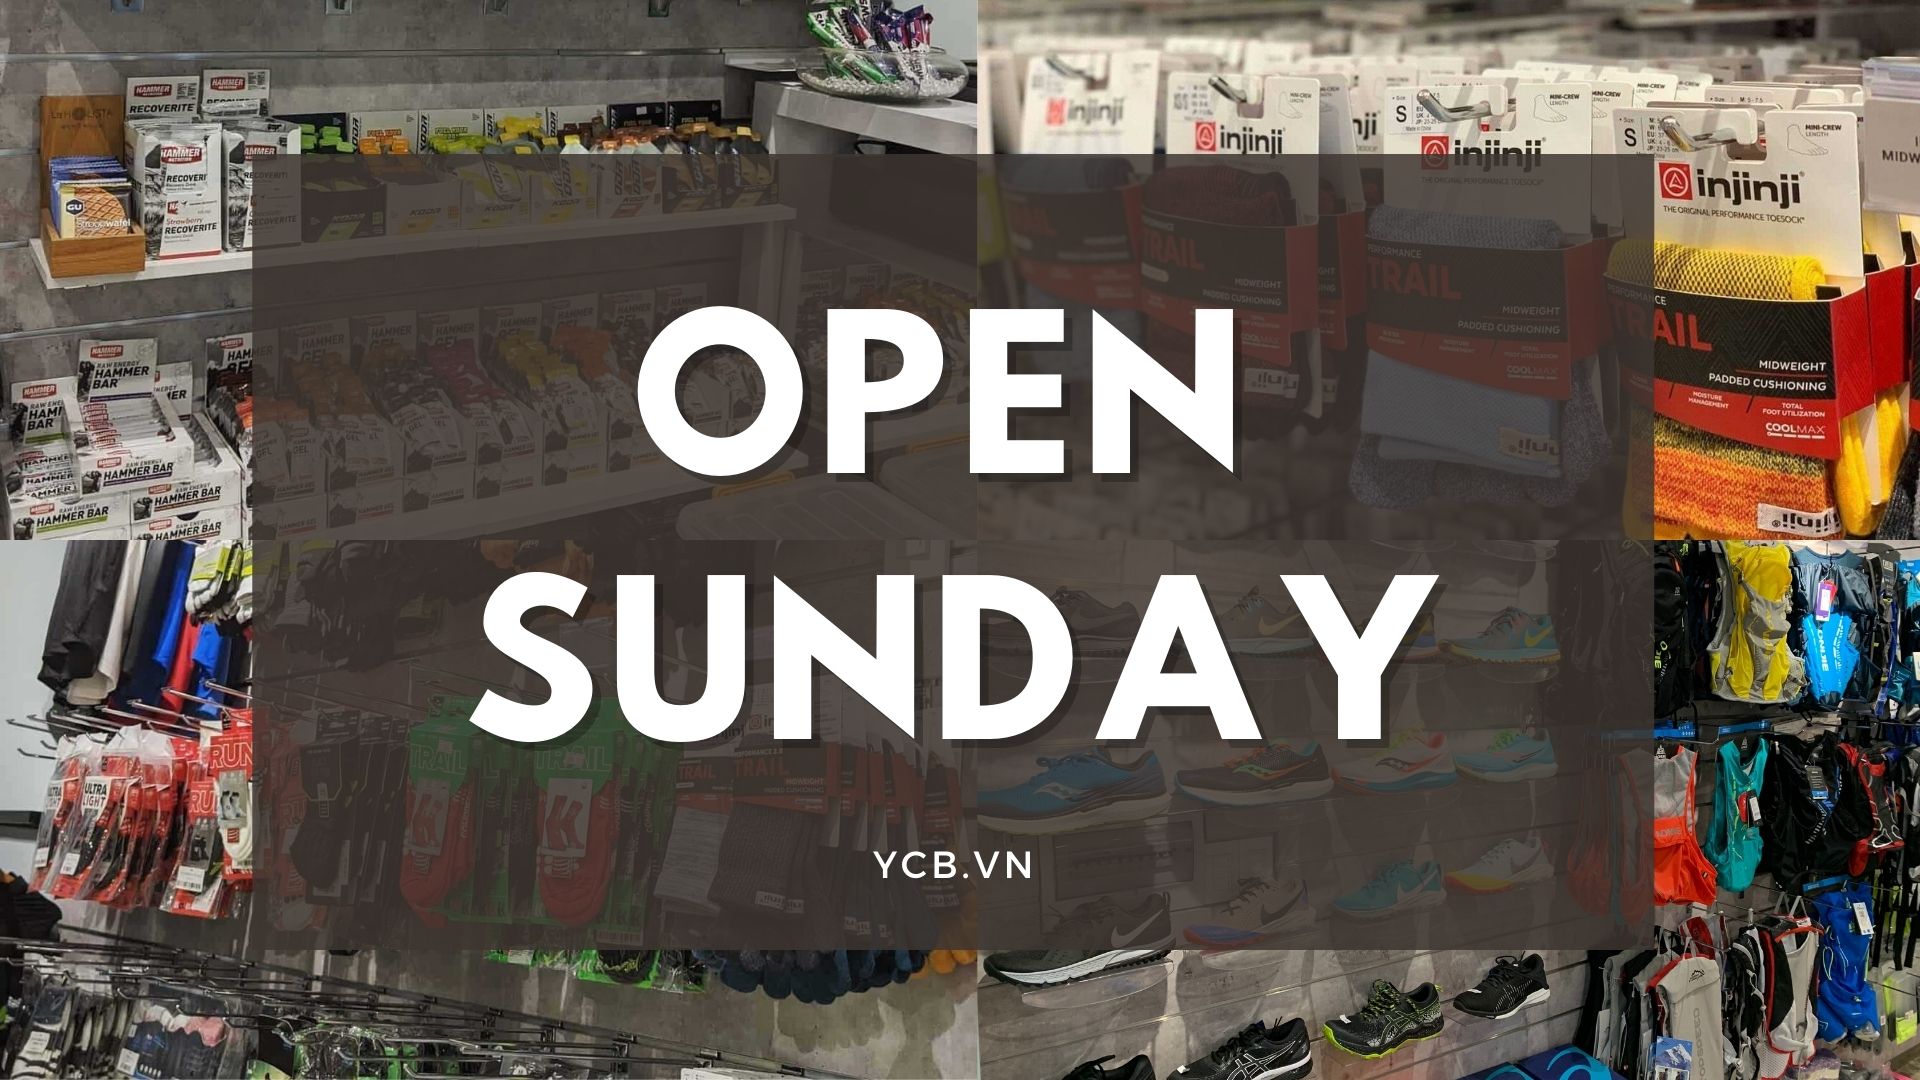 open sunday ycb Tháng 03/2022: Cửa hàng YCB mở cửa nguyên ngày CHỦ NHẬT - YCB.vn